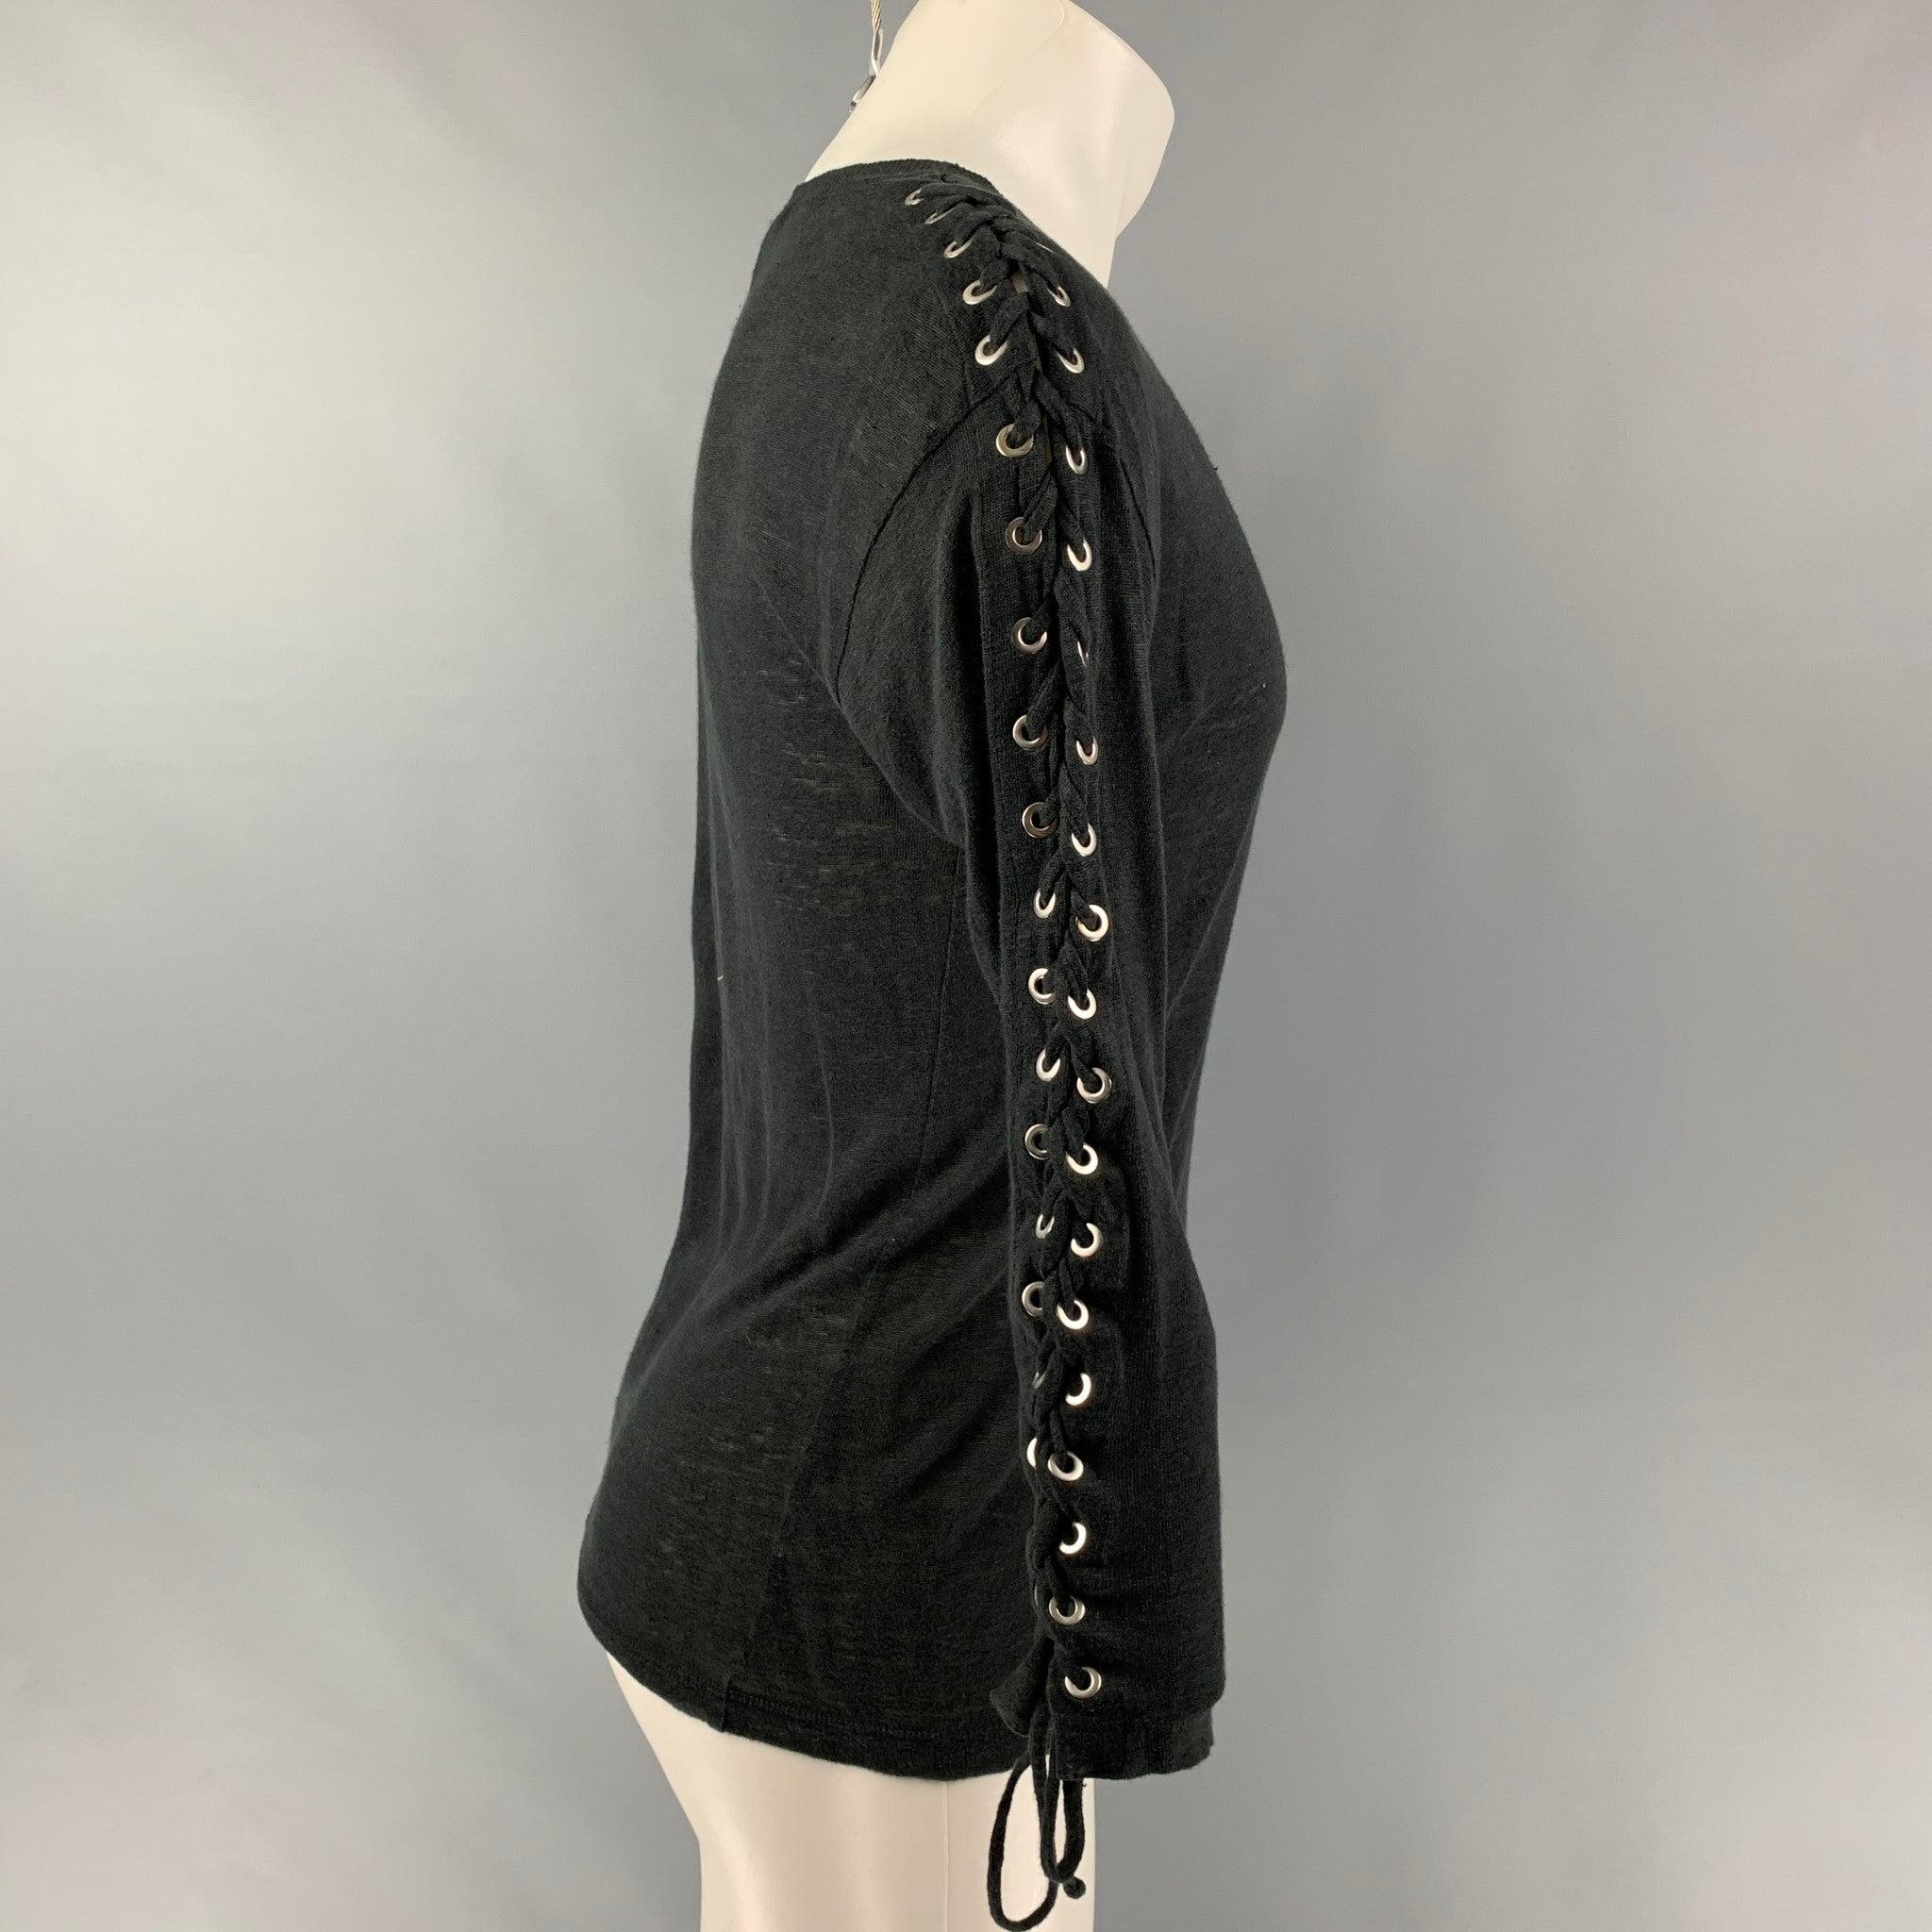 Le T-shirt à manches longues Salim d'IRO JEANS est réalisé en jersey de lin mélangé noir partiellement transparent. Il présente des épaules tombantes, des détails lacés sur les manches et un col ras du cou. Très bon état d'origine. Marques mineures